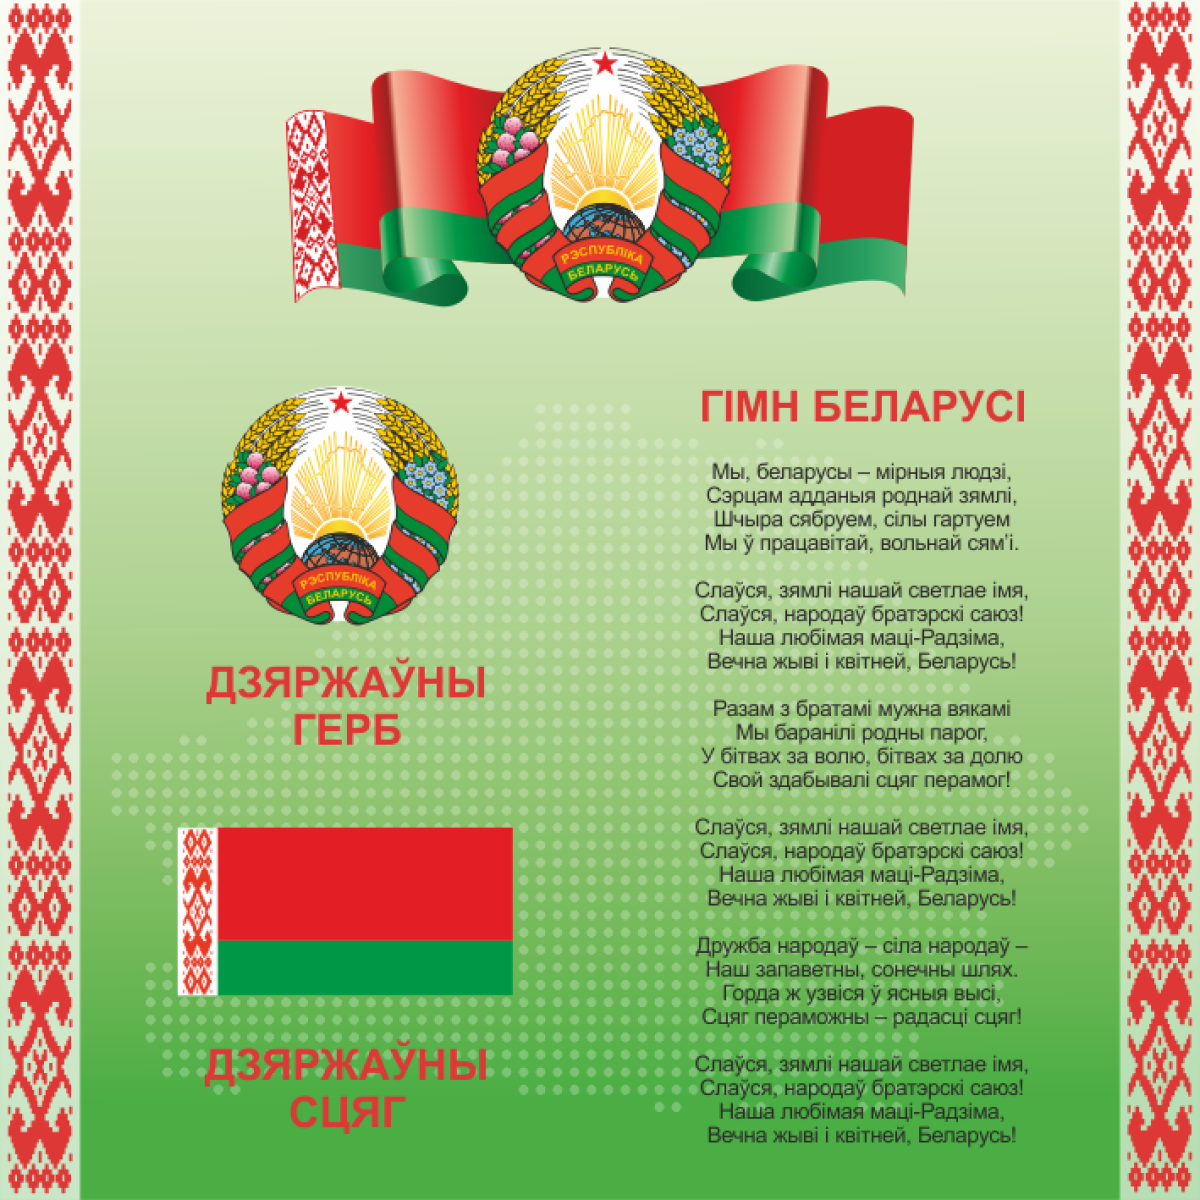 4401 Cтенд информационный с государственной символикой Республики Беларусь